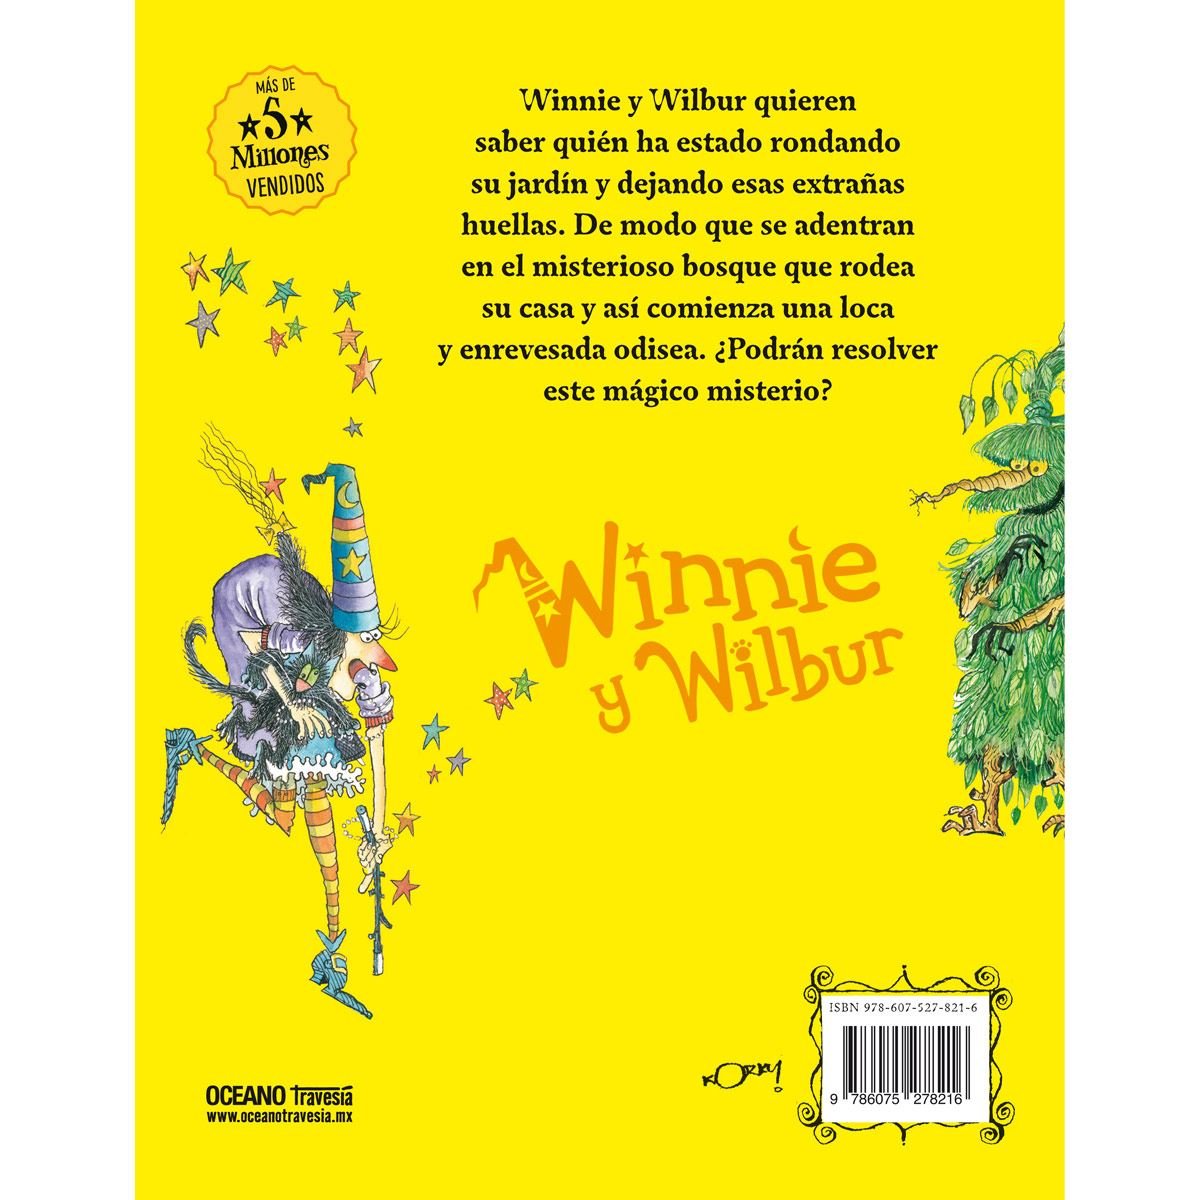 Winnie y wilbur. El misterio del monstruo